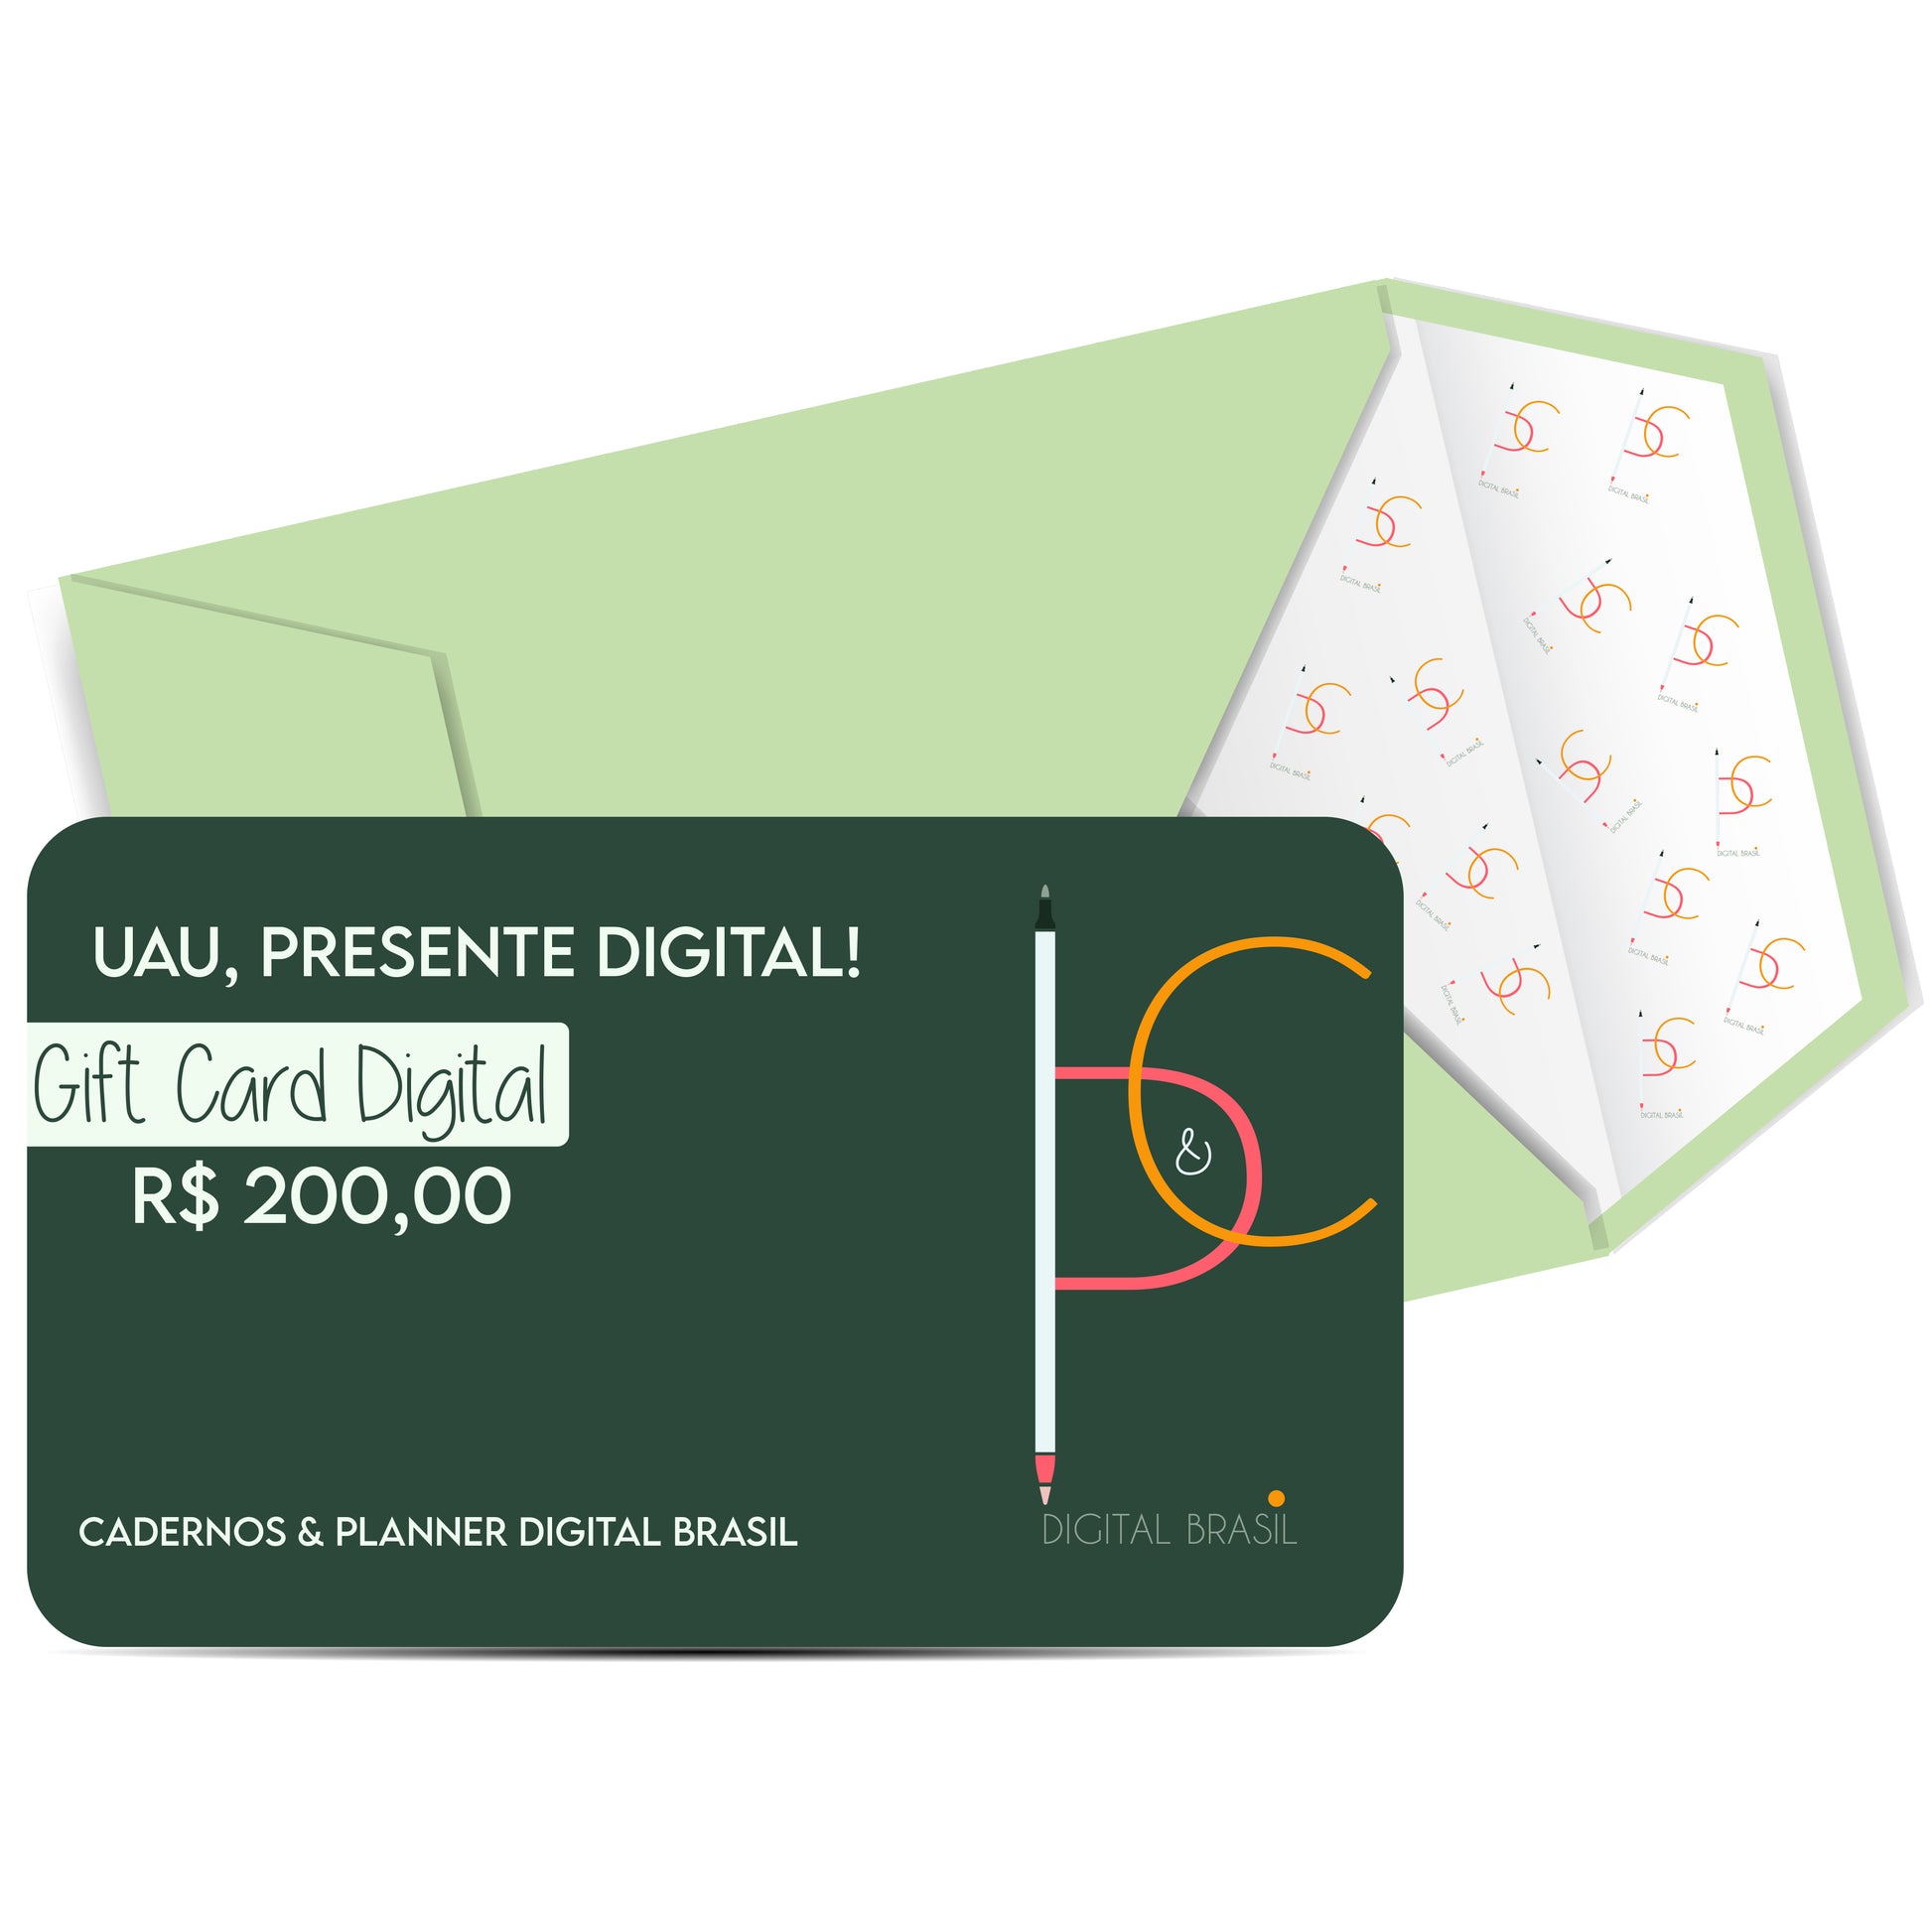 Uau Presente Digital R$ 80,00 Vinte Reais Cartão Presente Digital Gift Card para produtos da Cadernos & Planner Digital Brasil, Planner Digital, Mapa Mental Digital, Caderno Digital, Adesivos Stickers Digital